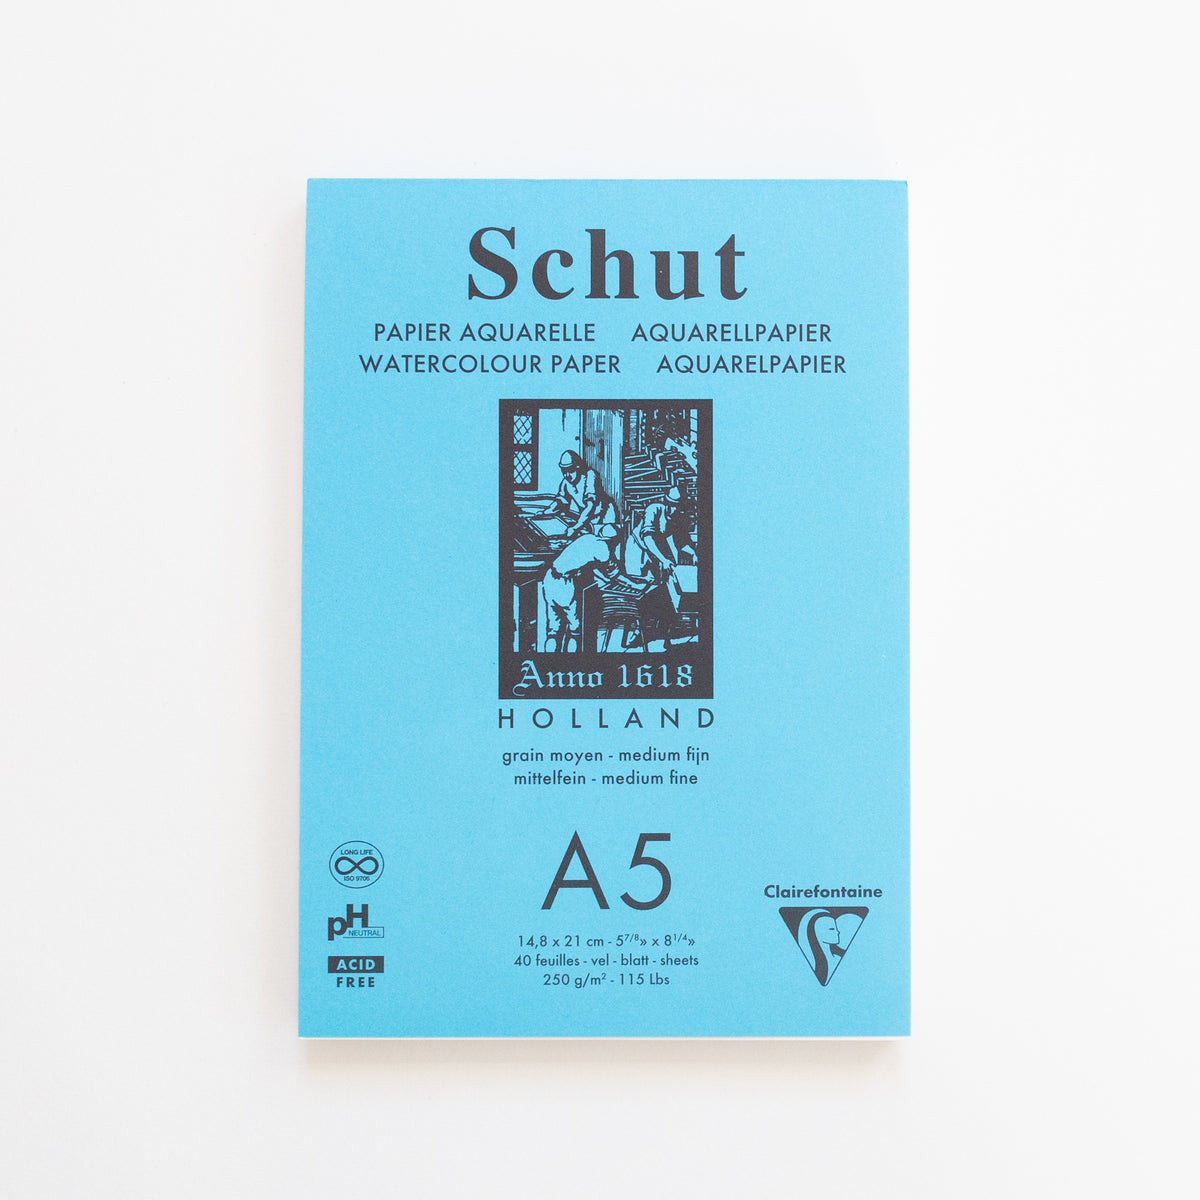 Schut Aquarelpapier A5 250g 40 sheets